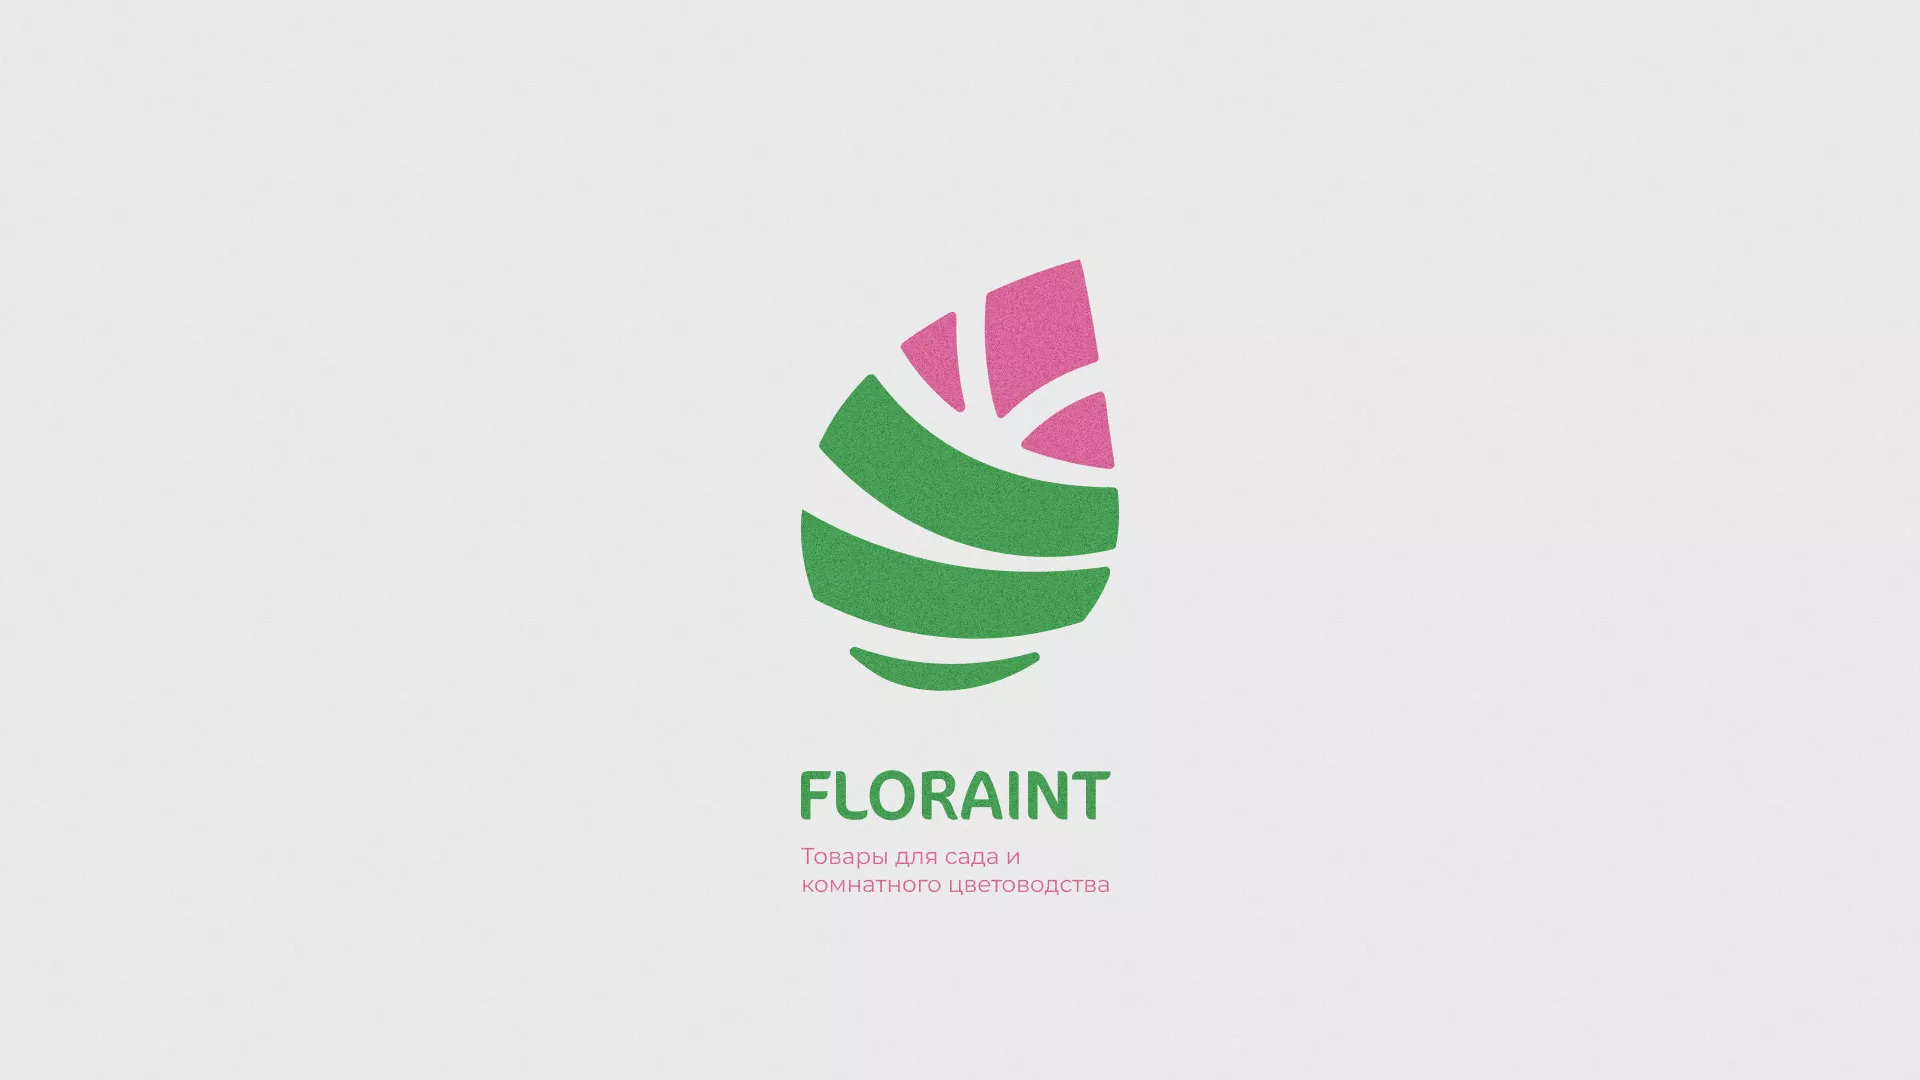 Разработка оформления профиля Instagram для магазина «Floraint» в Усть-Куте